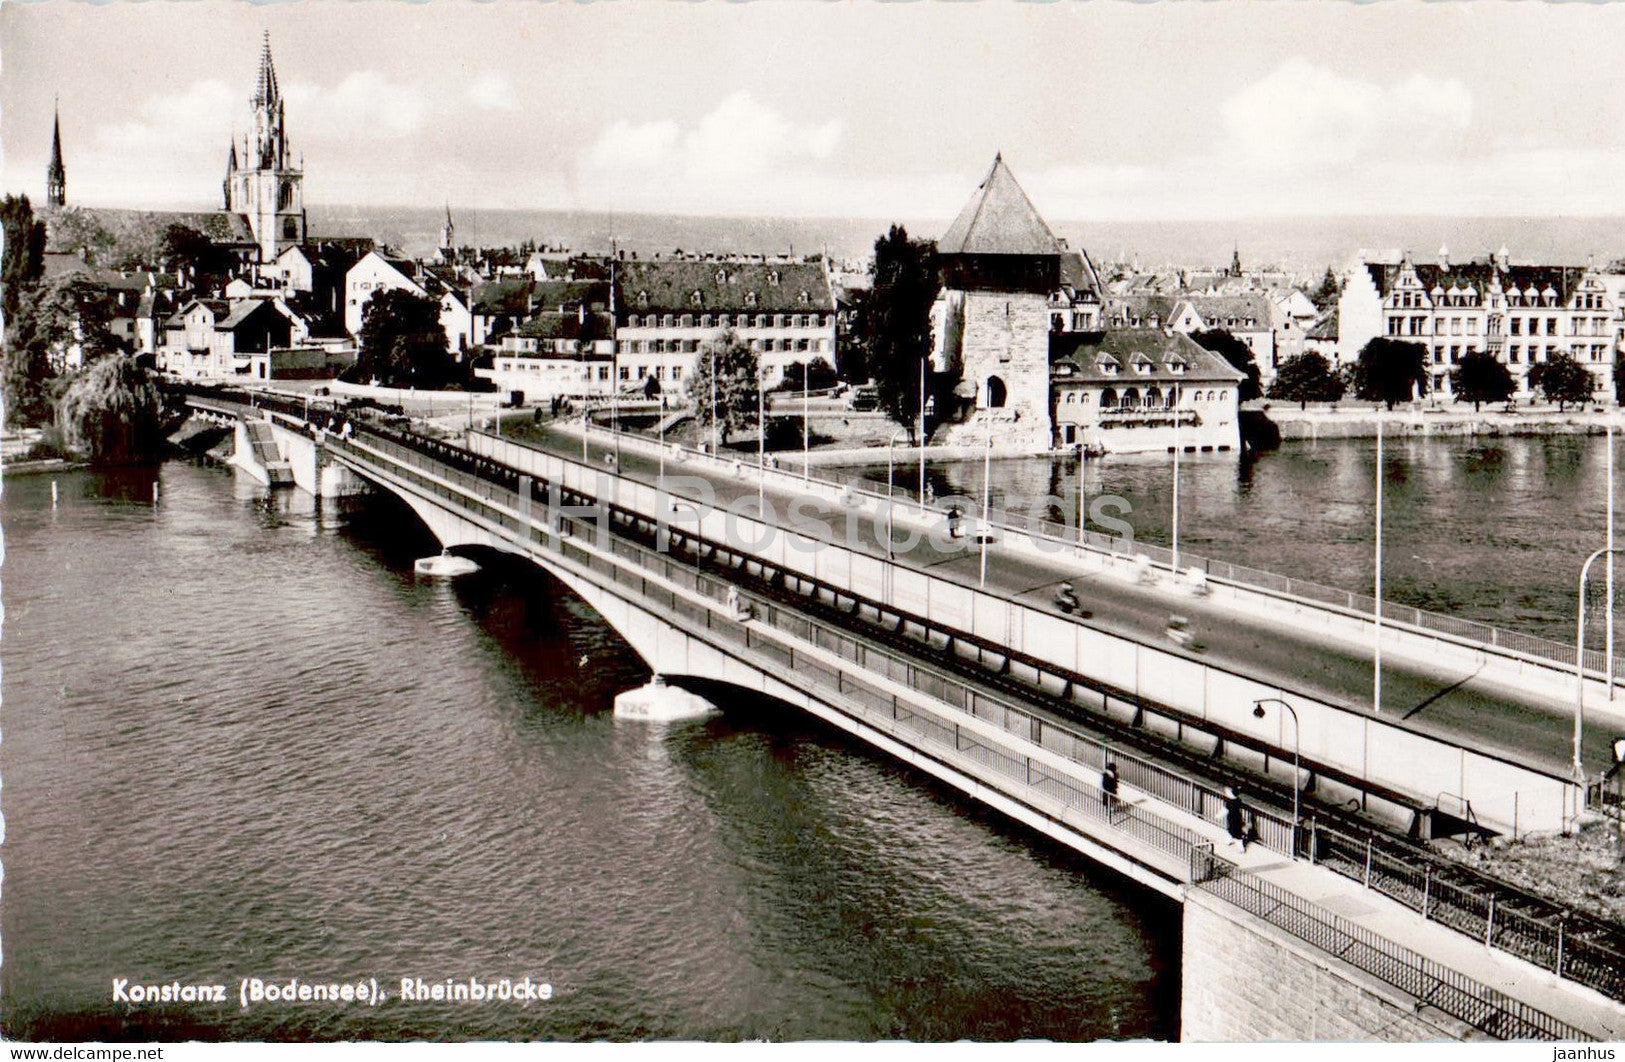 Konstanz - Rheinbrucke - bridge - old postcard - 1955 - Germany - used - JH Postcards